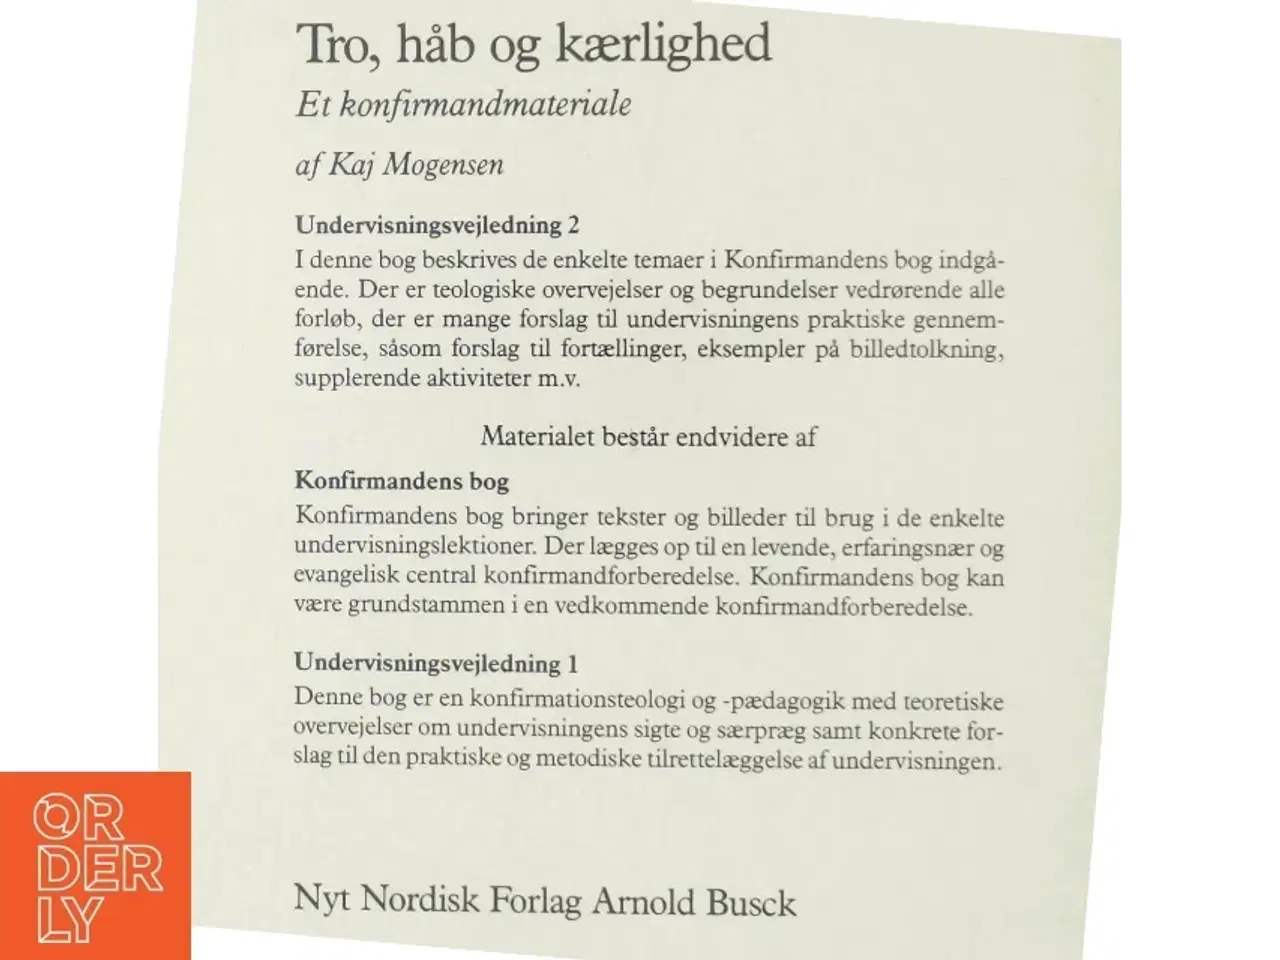 Billede 3 - Tro, håb og kærlighed - Undervisningsvejledning 2 fra Nyt Nordisk Forlag Arnold Busck